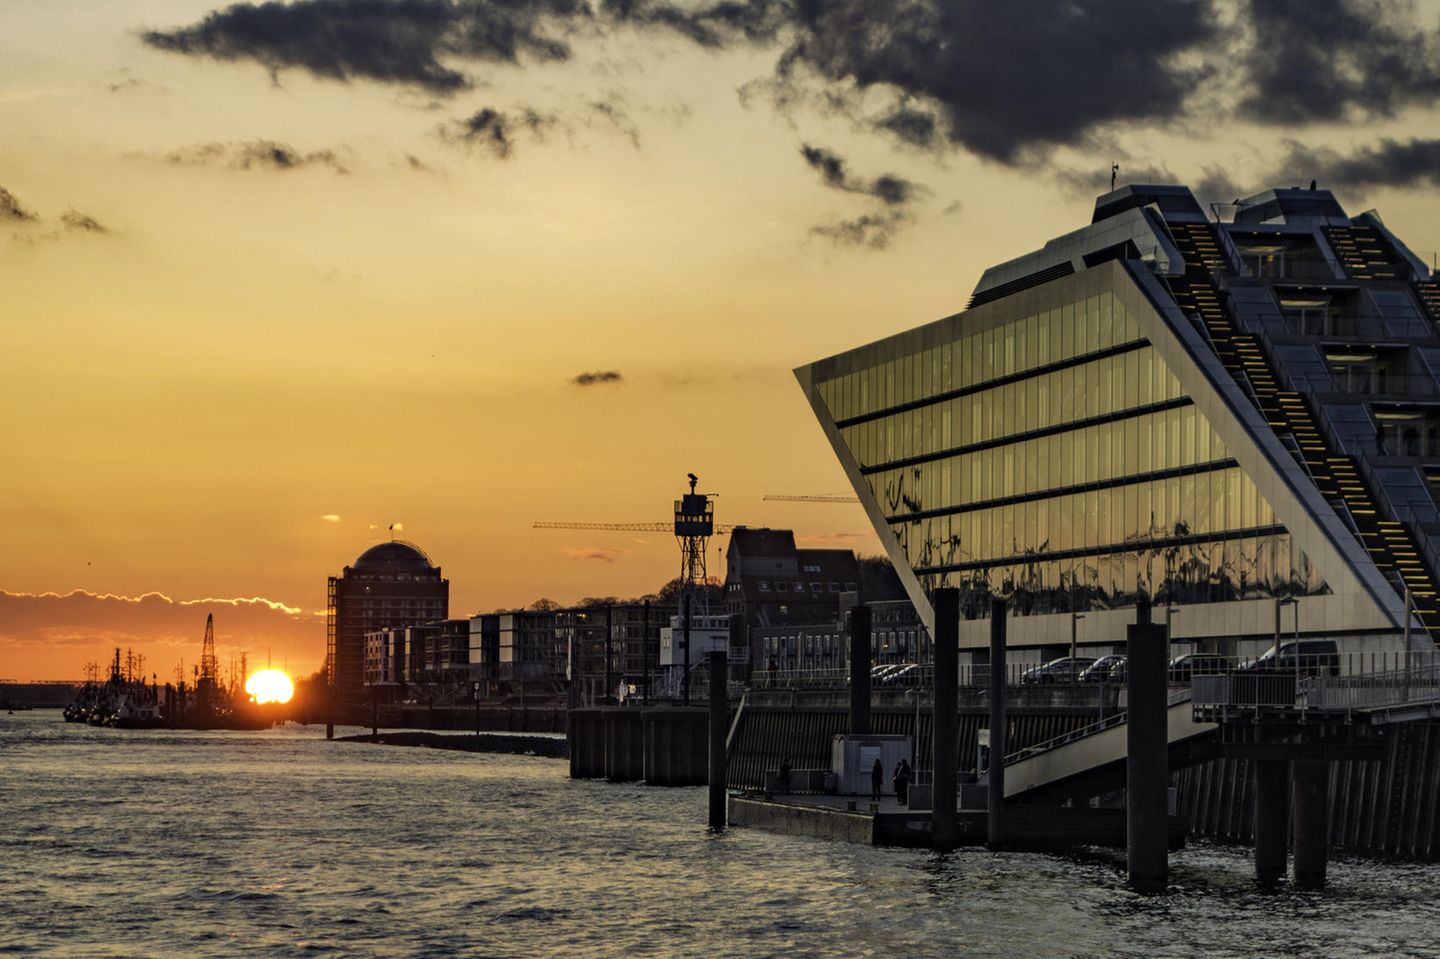 Sonnenuntergang mit Blick auf Dockland vom Schiff aus